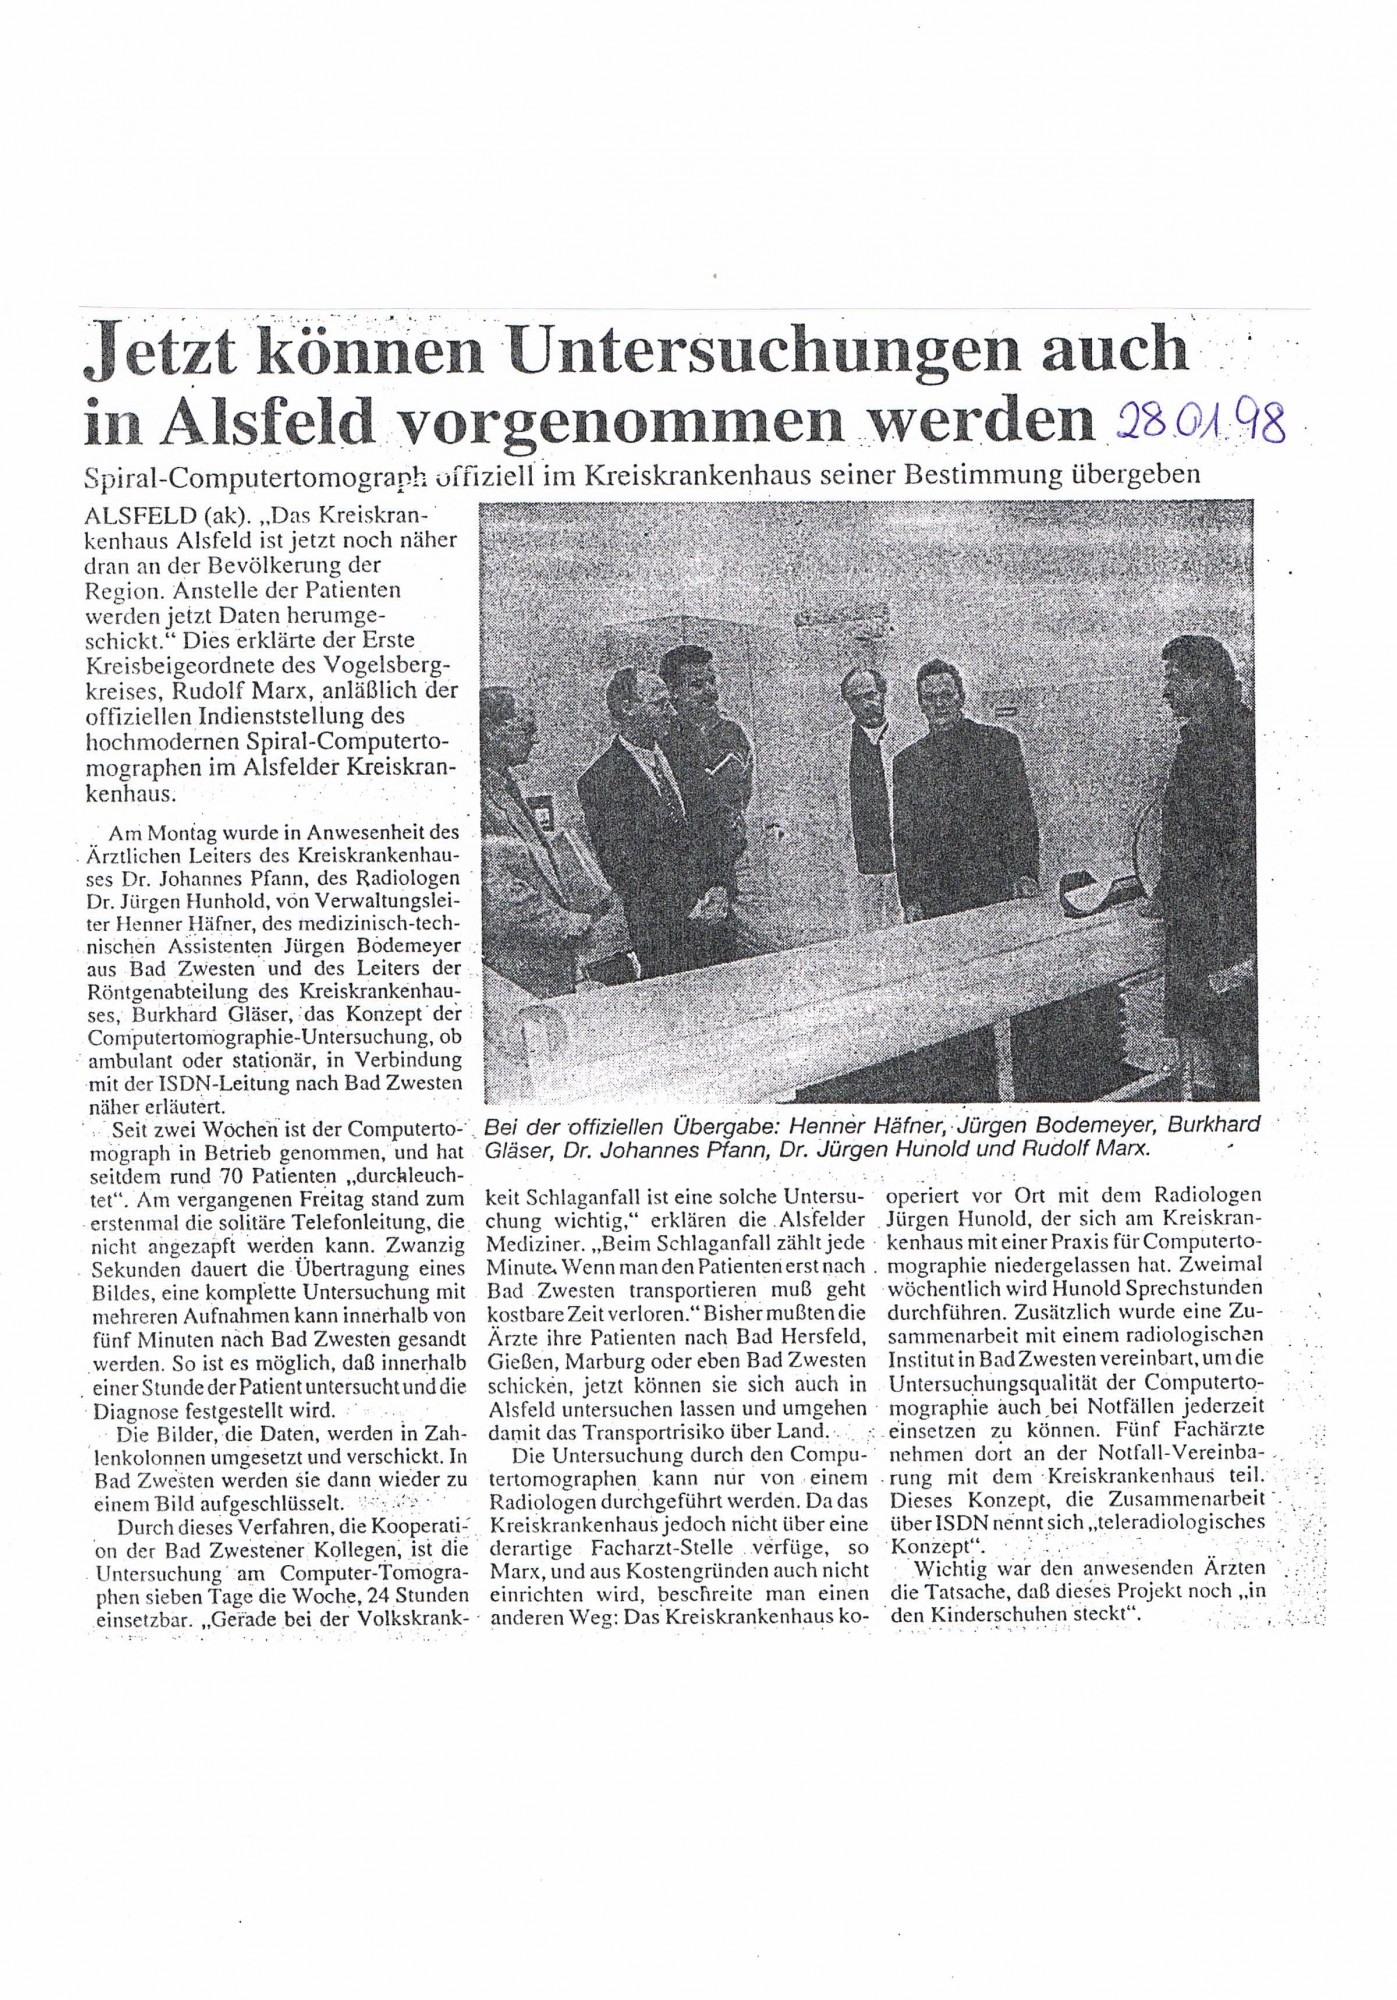 1998-01-28 Jetzt können Untersuchungen auch in Alsfeld vorgenommen werden-001